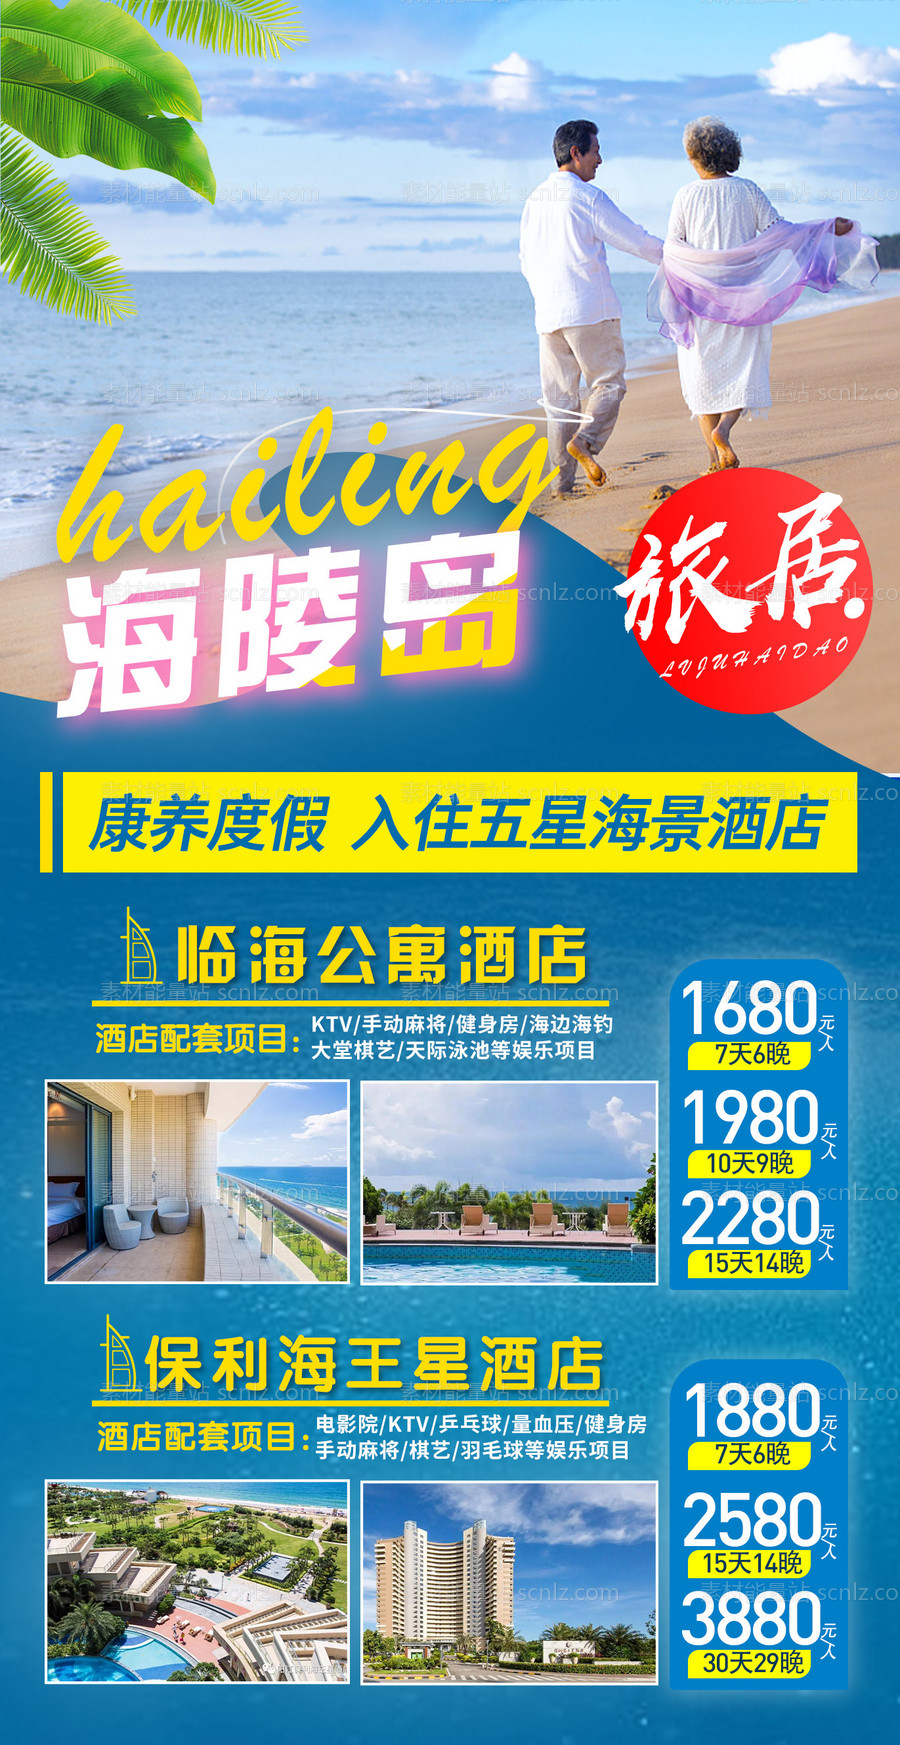 素材能量站-广东海陵岛旅居旅游海报